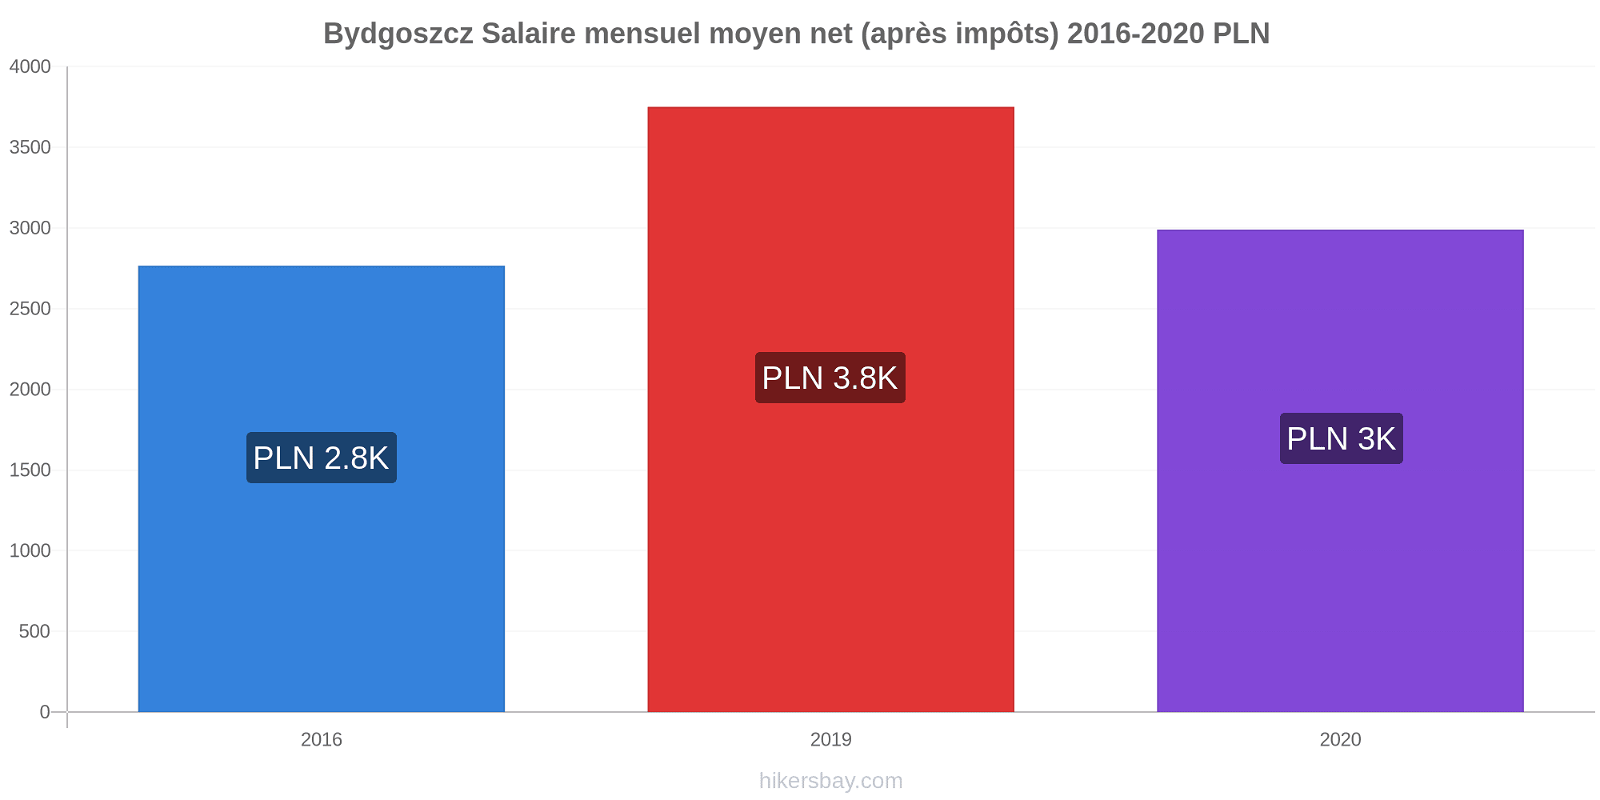 Bydgoszcz changements de prix Salaire mensuel Net (après impôts) hikersbay.com